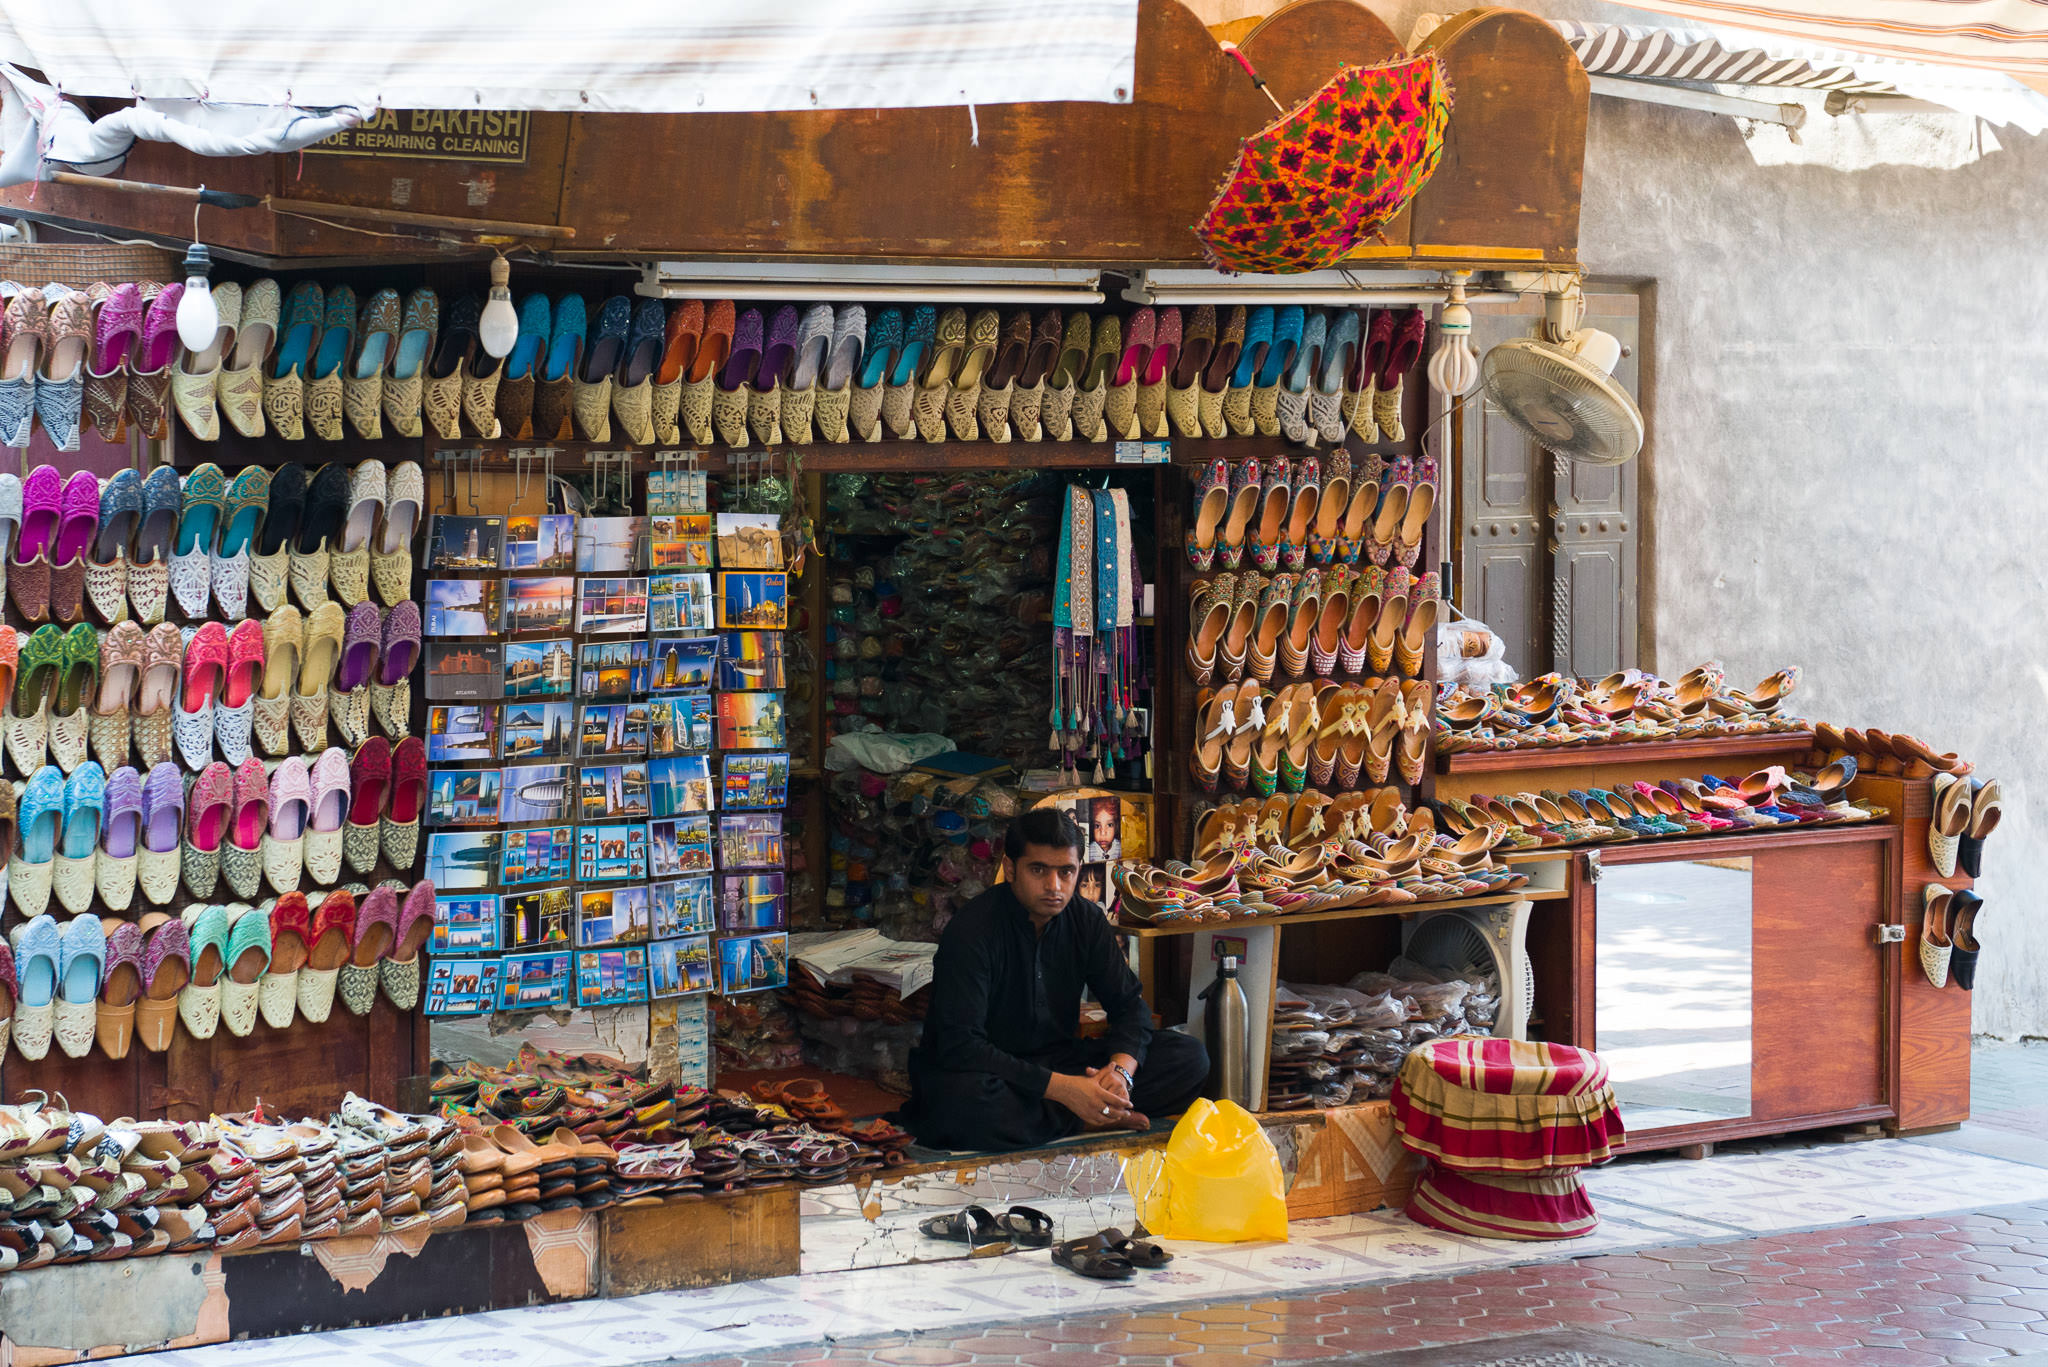 Shoe shop near Indian Textile Market, Dubai